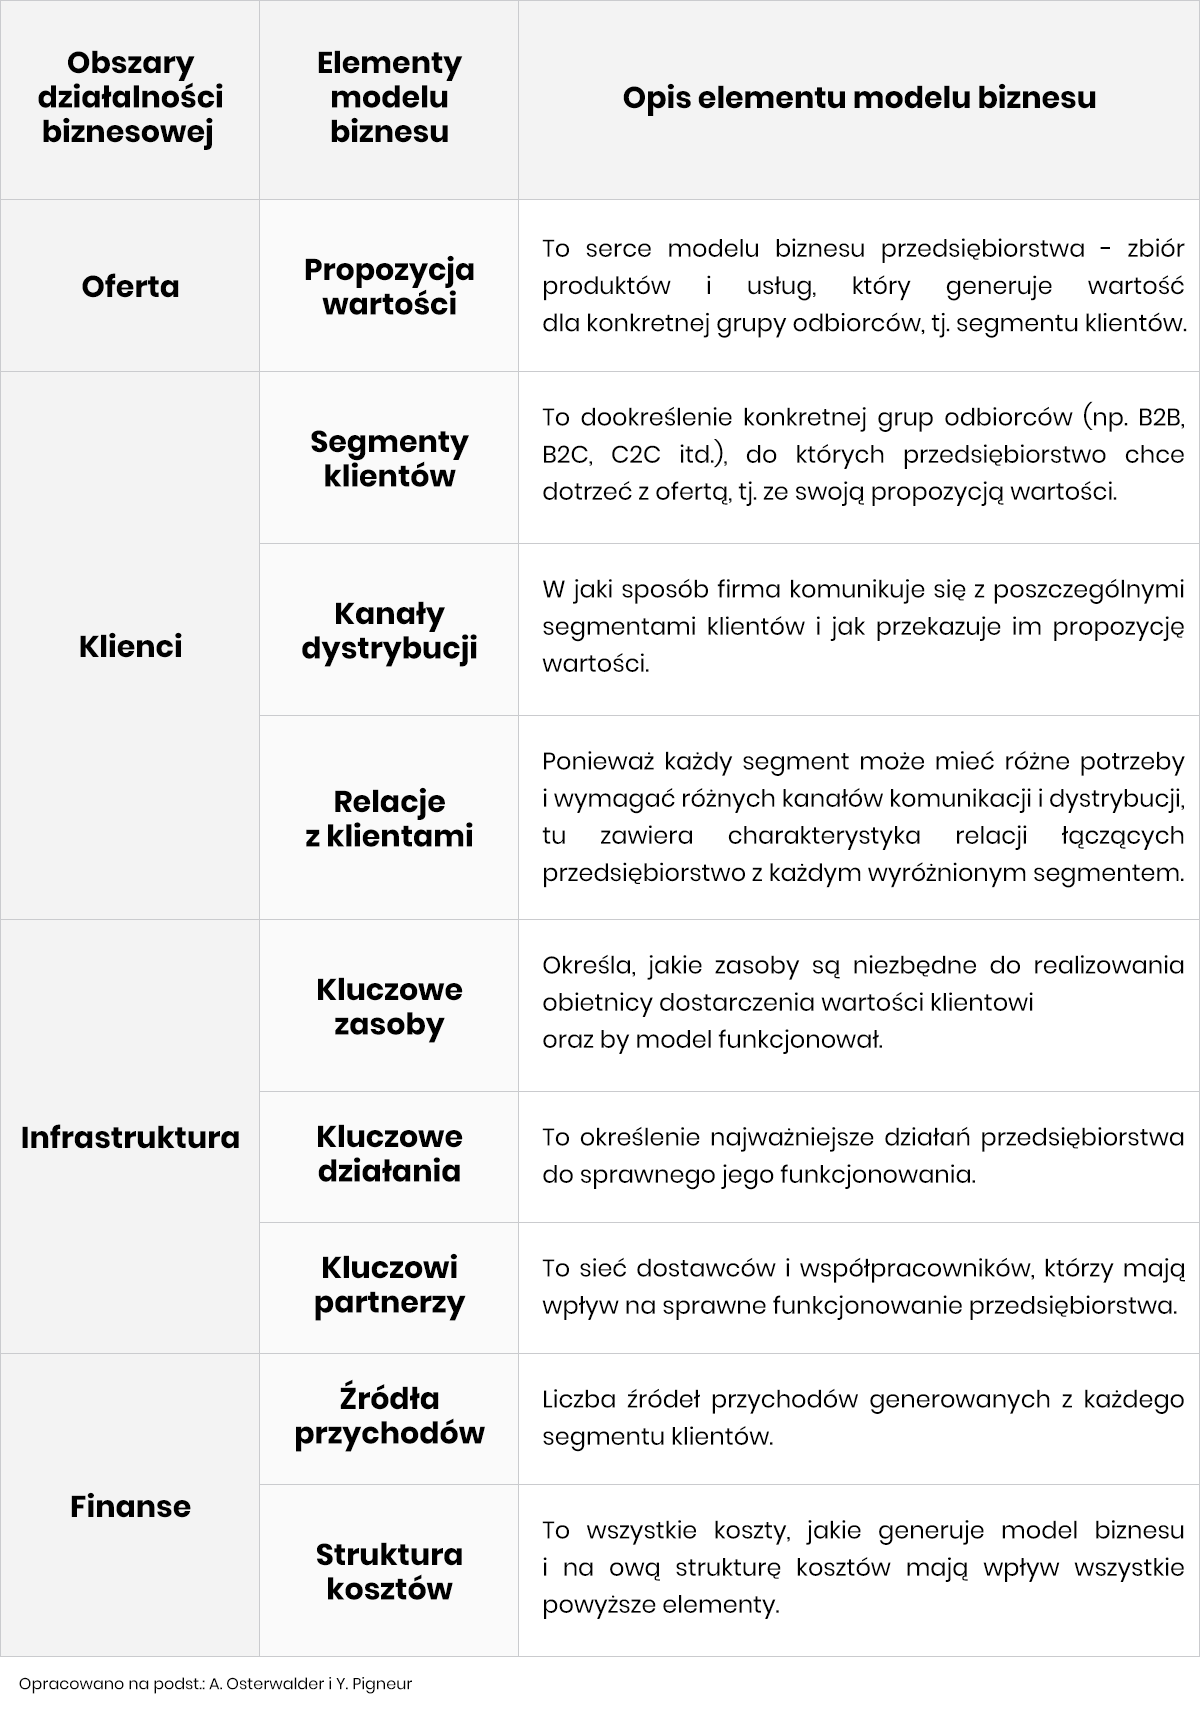 Elementy modelu biznesowego